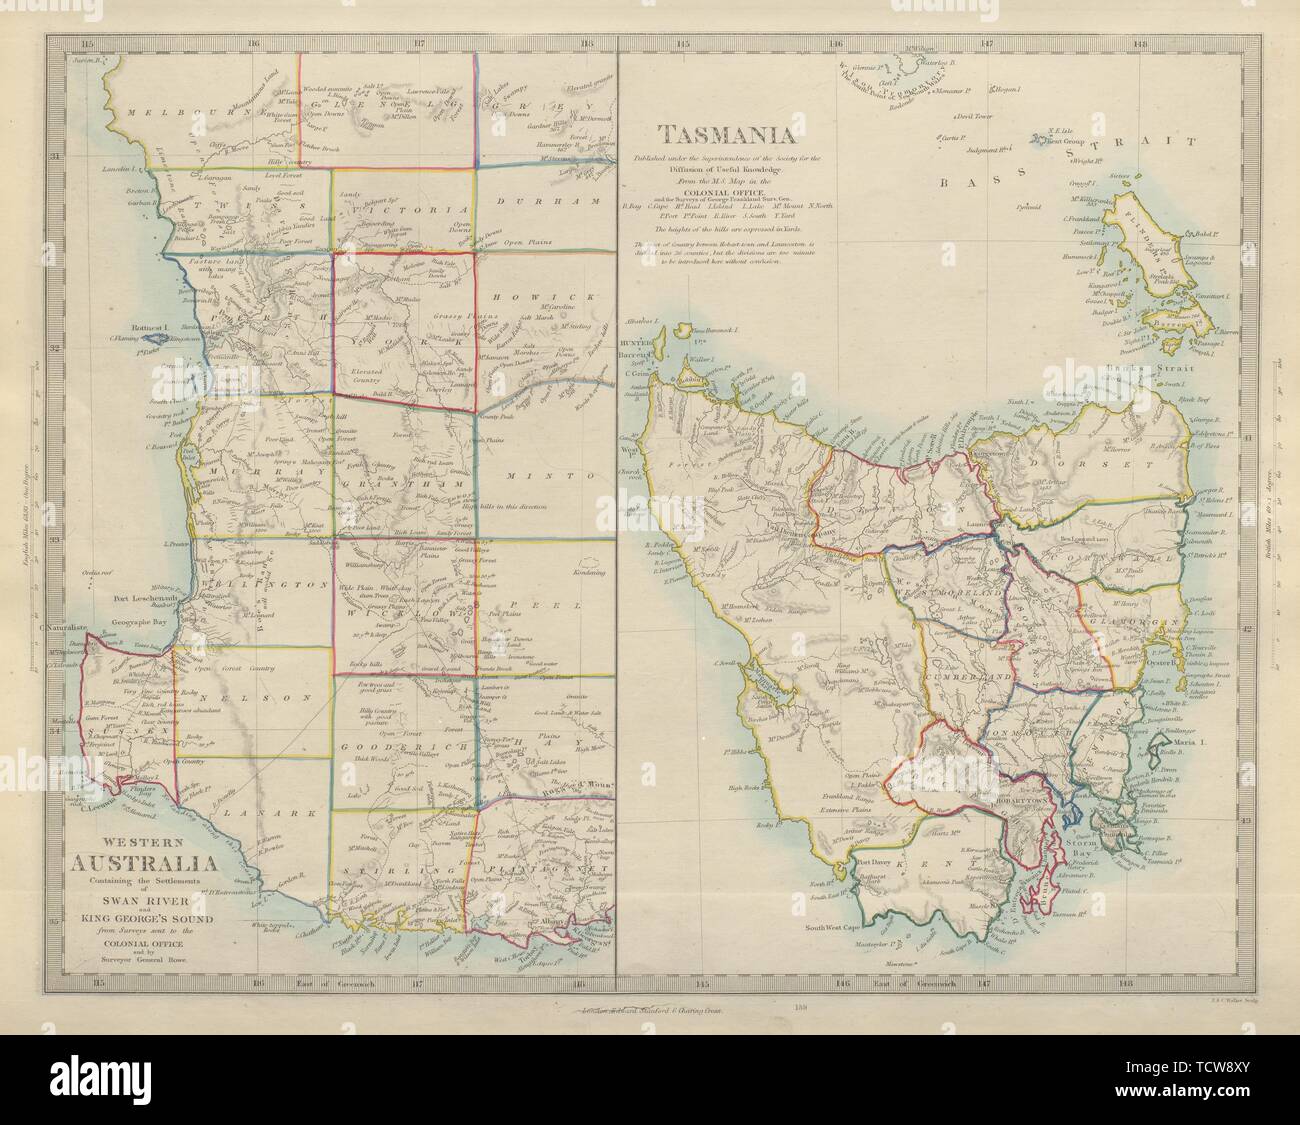 AUSTRALIA. Western Australia & Tasmania. Perth & Hobart. SDUK 1874 old map Stock Photo